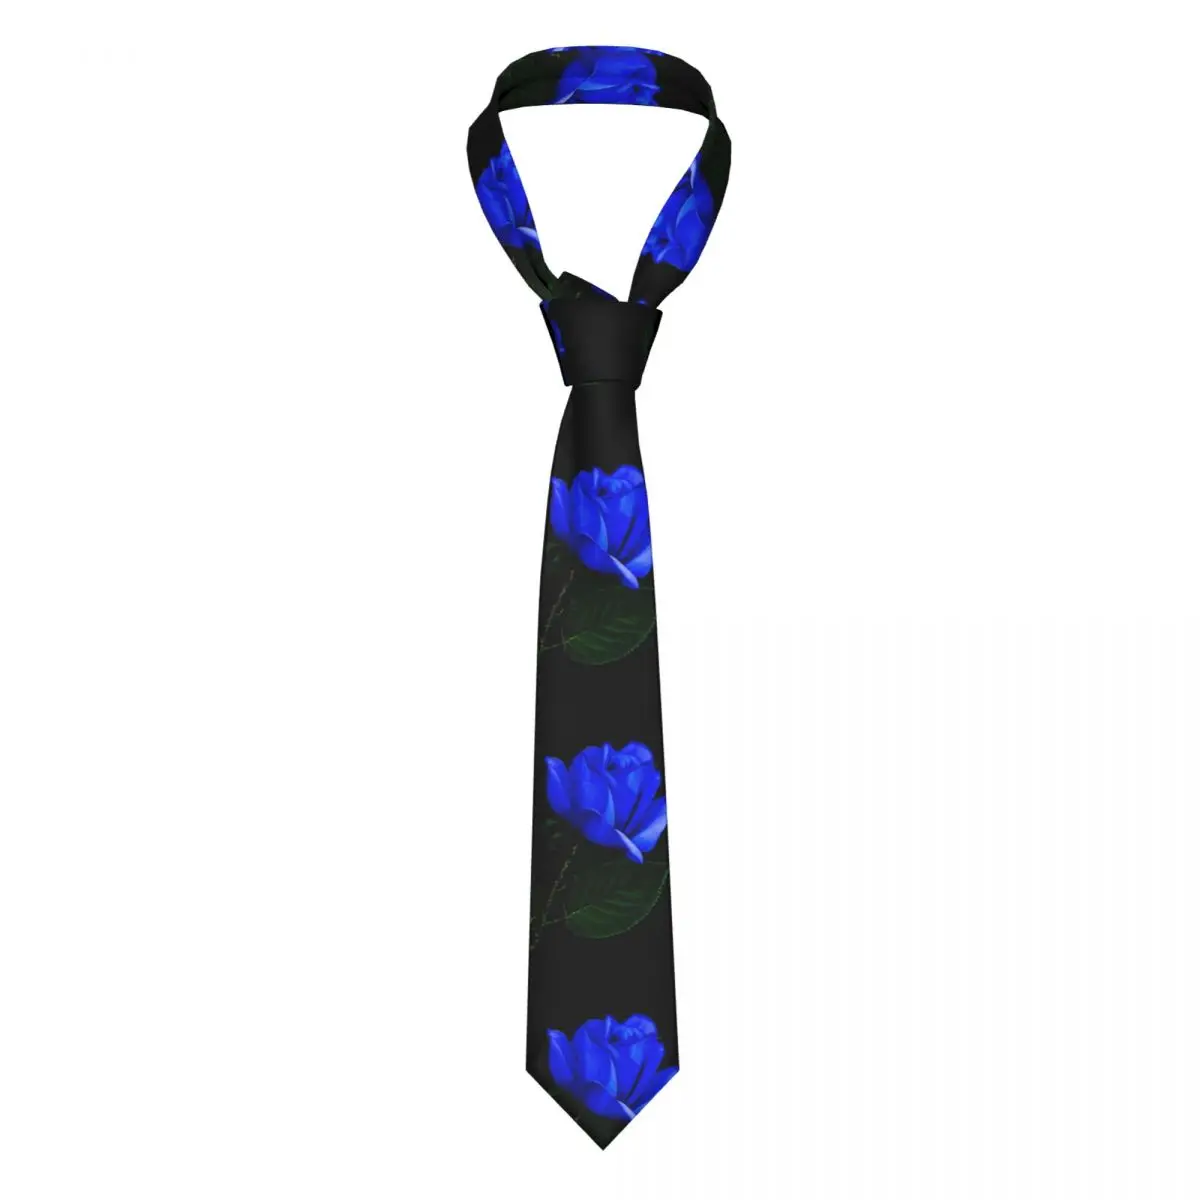 

Галстук с цветочным принтом синяя Роза Формальные Галстуки из полиэстера и шелка Подарочная Мужская блузка галстук с принтом